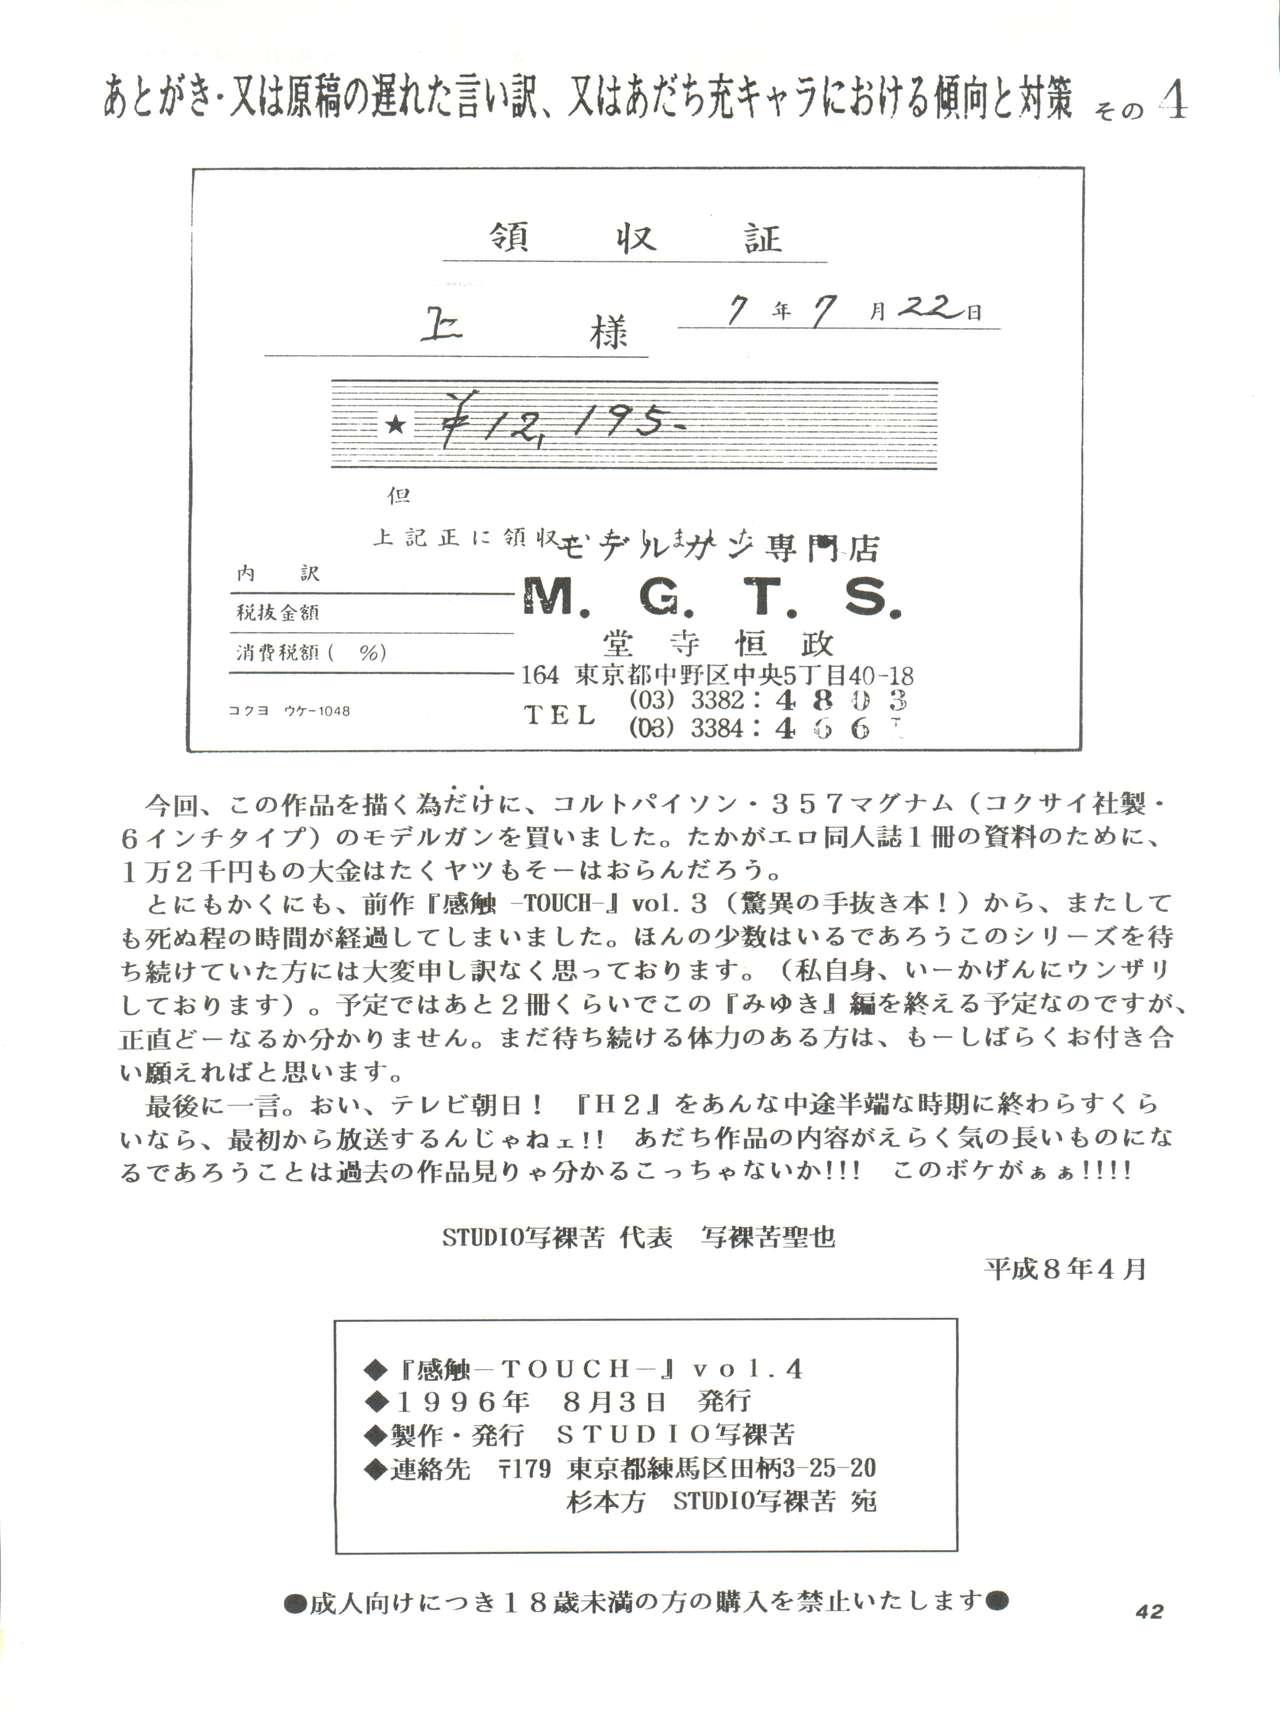 [STUDIO SHARAKU (Sharaku Seiya)] Kanshoku -TOUCH- vol.4 (Miyuki) [1996-08-03] 41